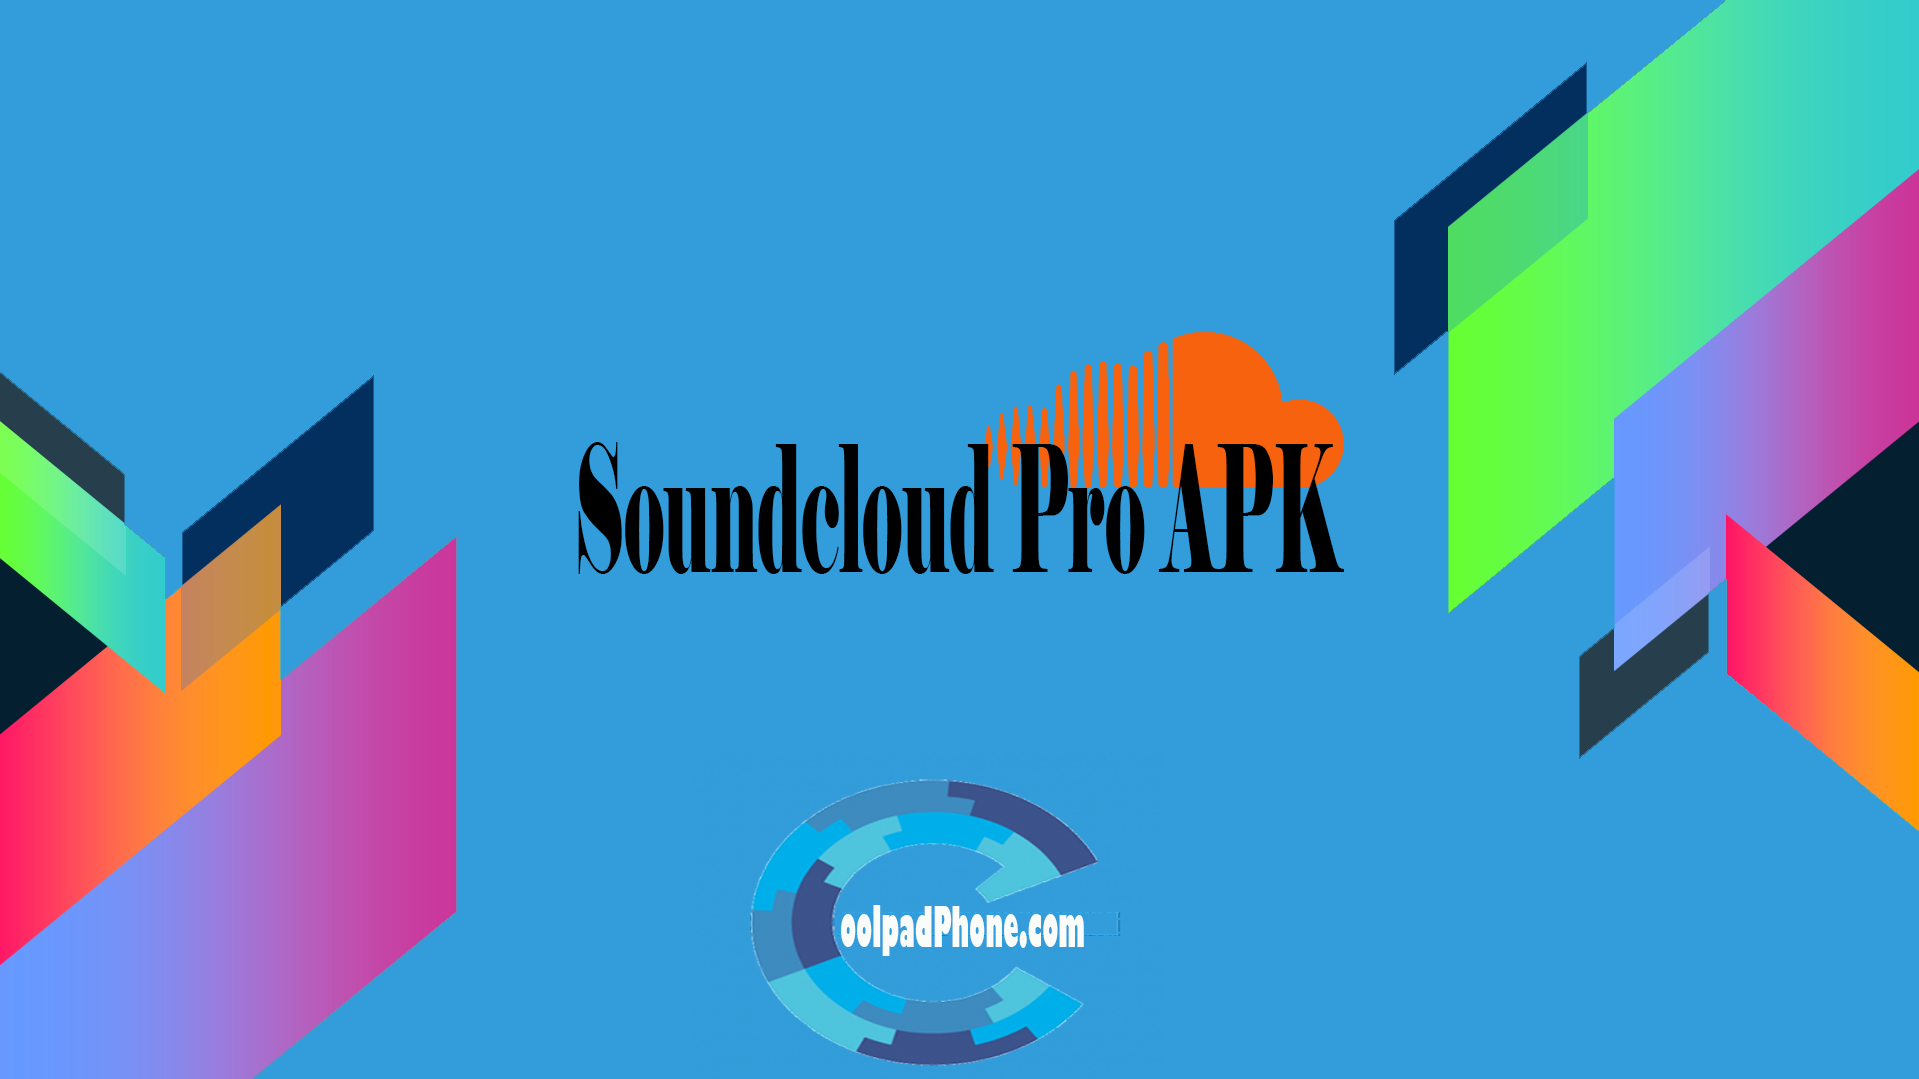 Soundcloud Pro APK